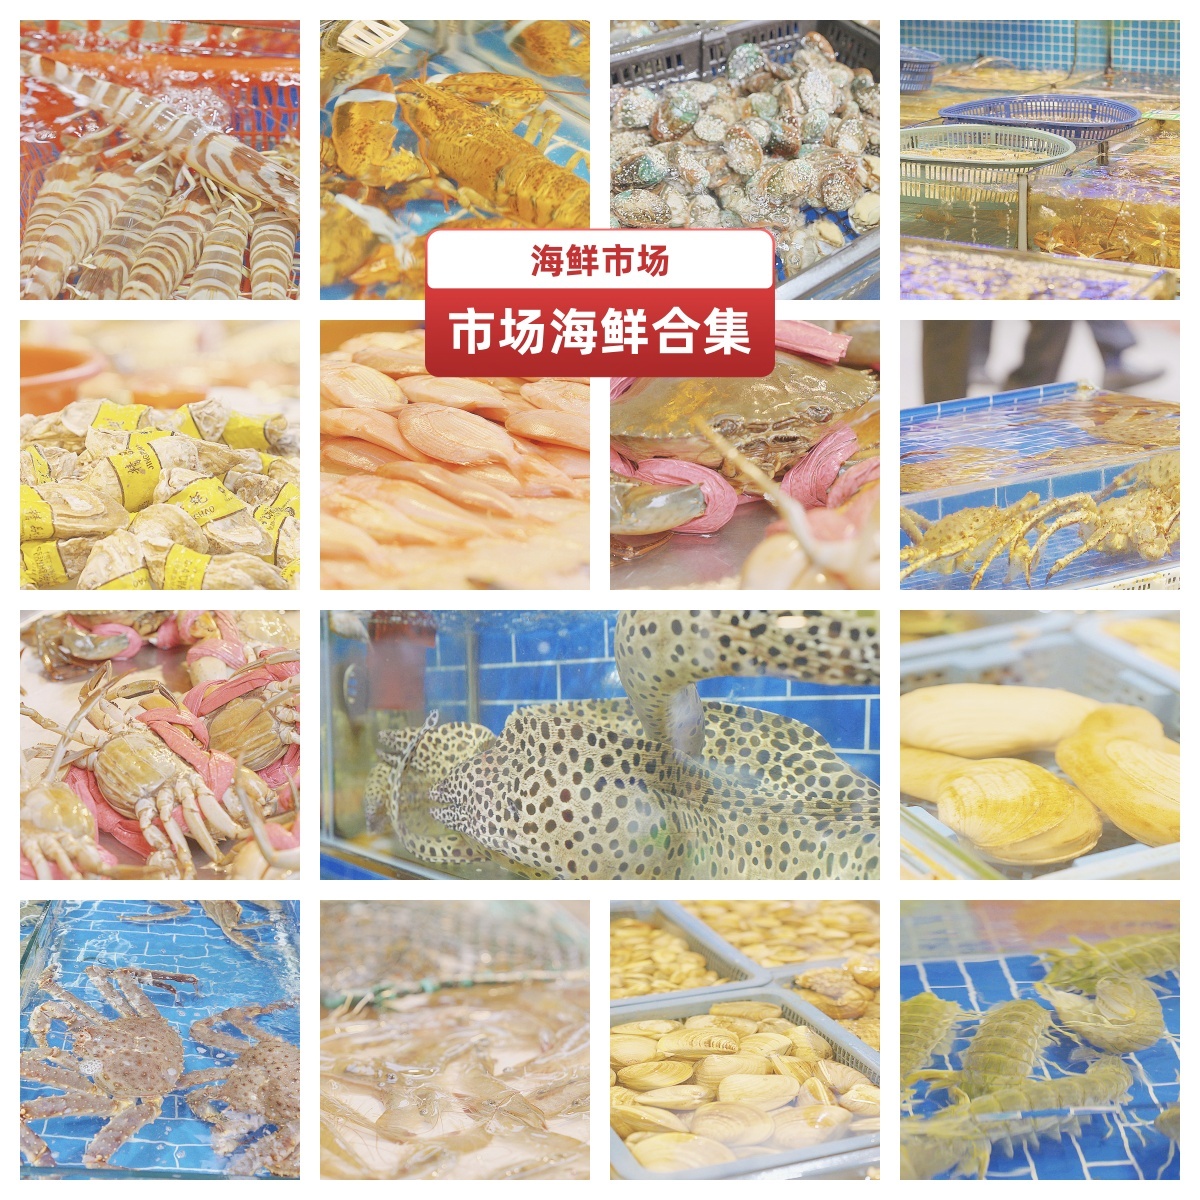 海鲜市场生蚝鳗鱼龙虾大闸蟹龙虾各类海鲜